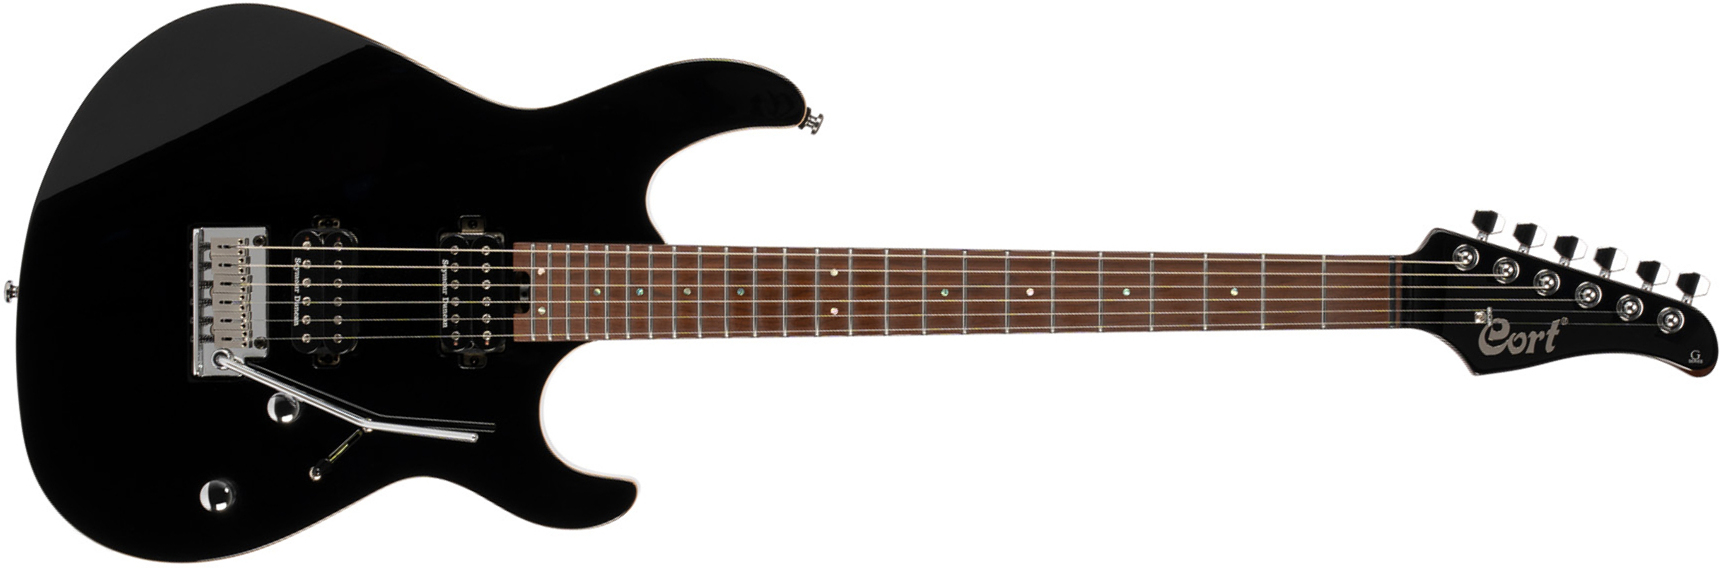 Cort G300 Pro Hh Trem Mn - Black - Elektrische gitaar in Str-vorm - Main picture